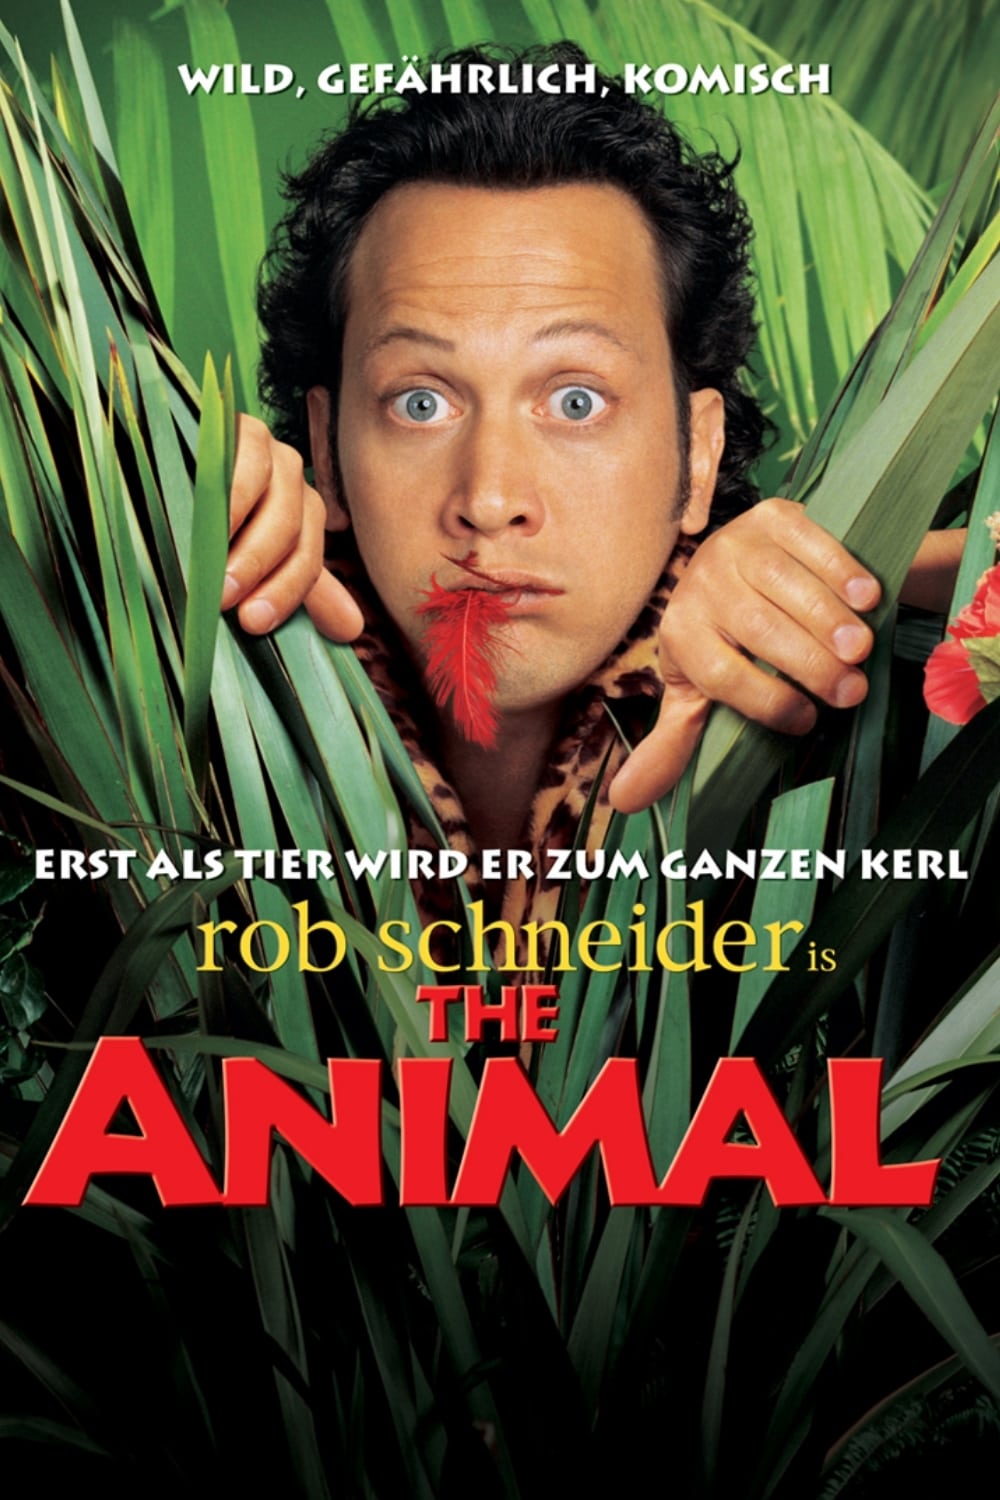 Plakat von "Animal - Das Tier im Manne"